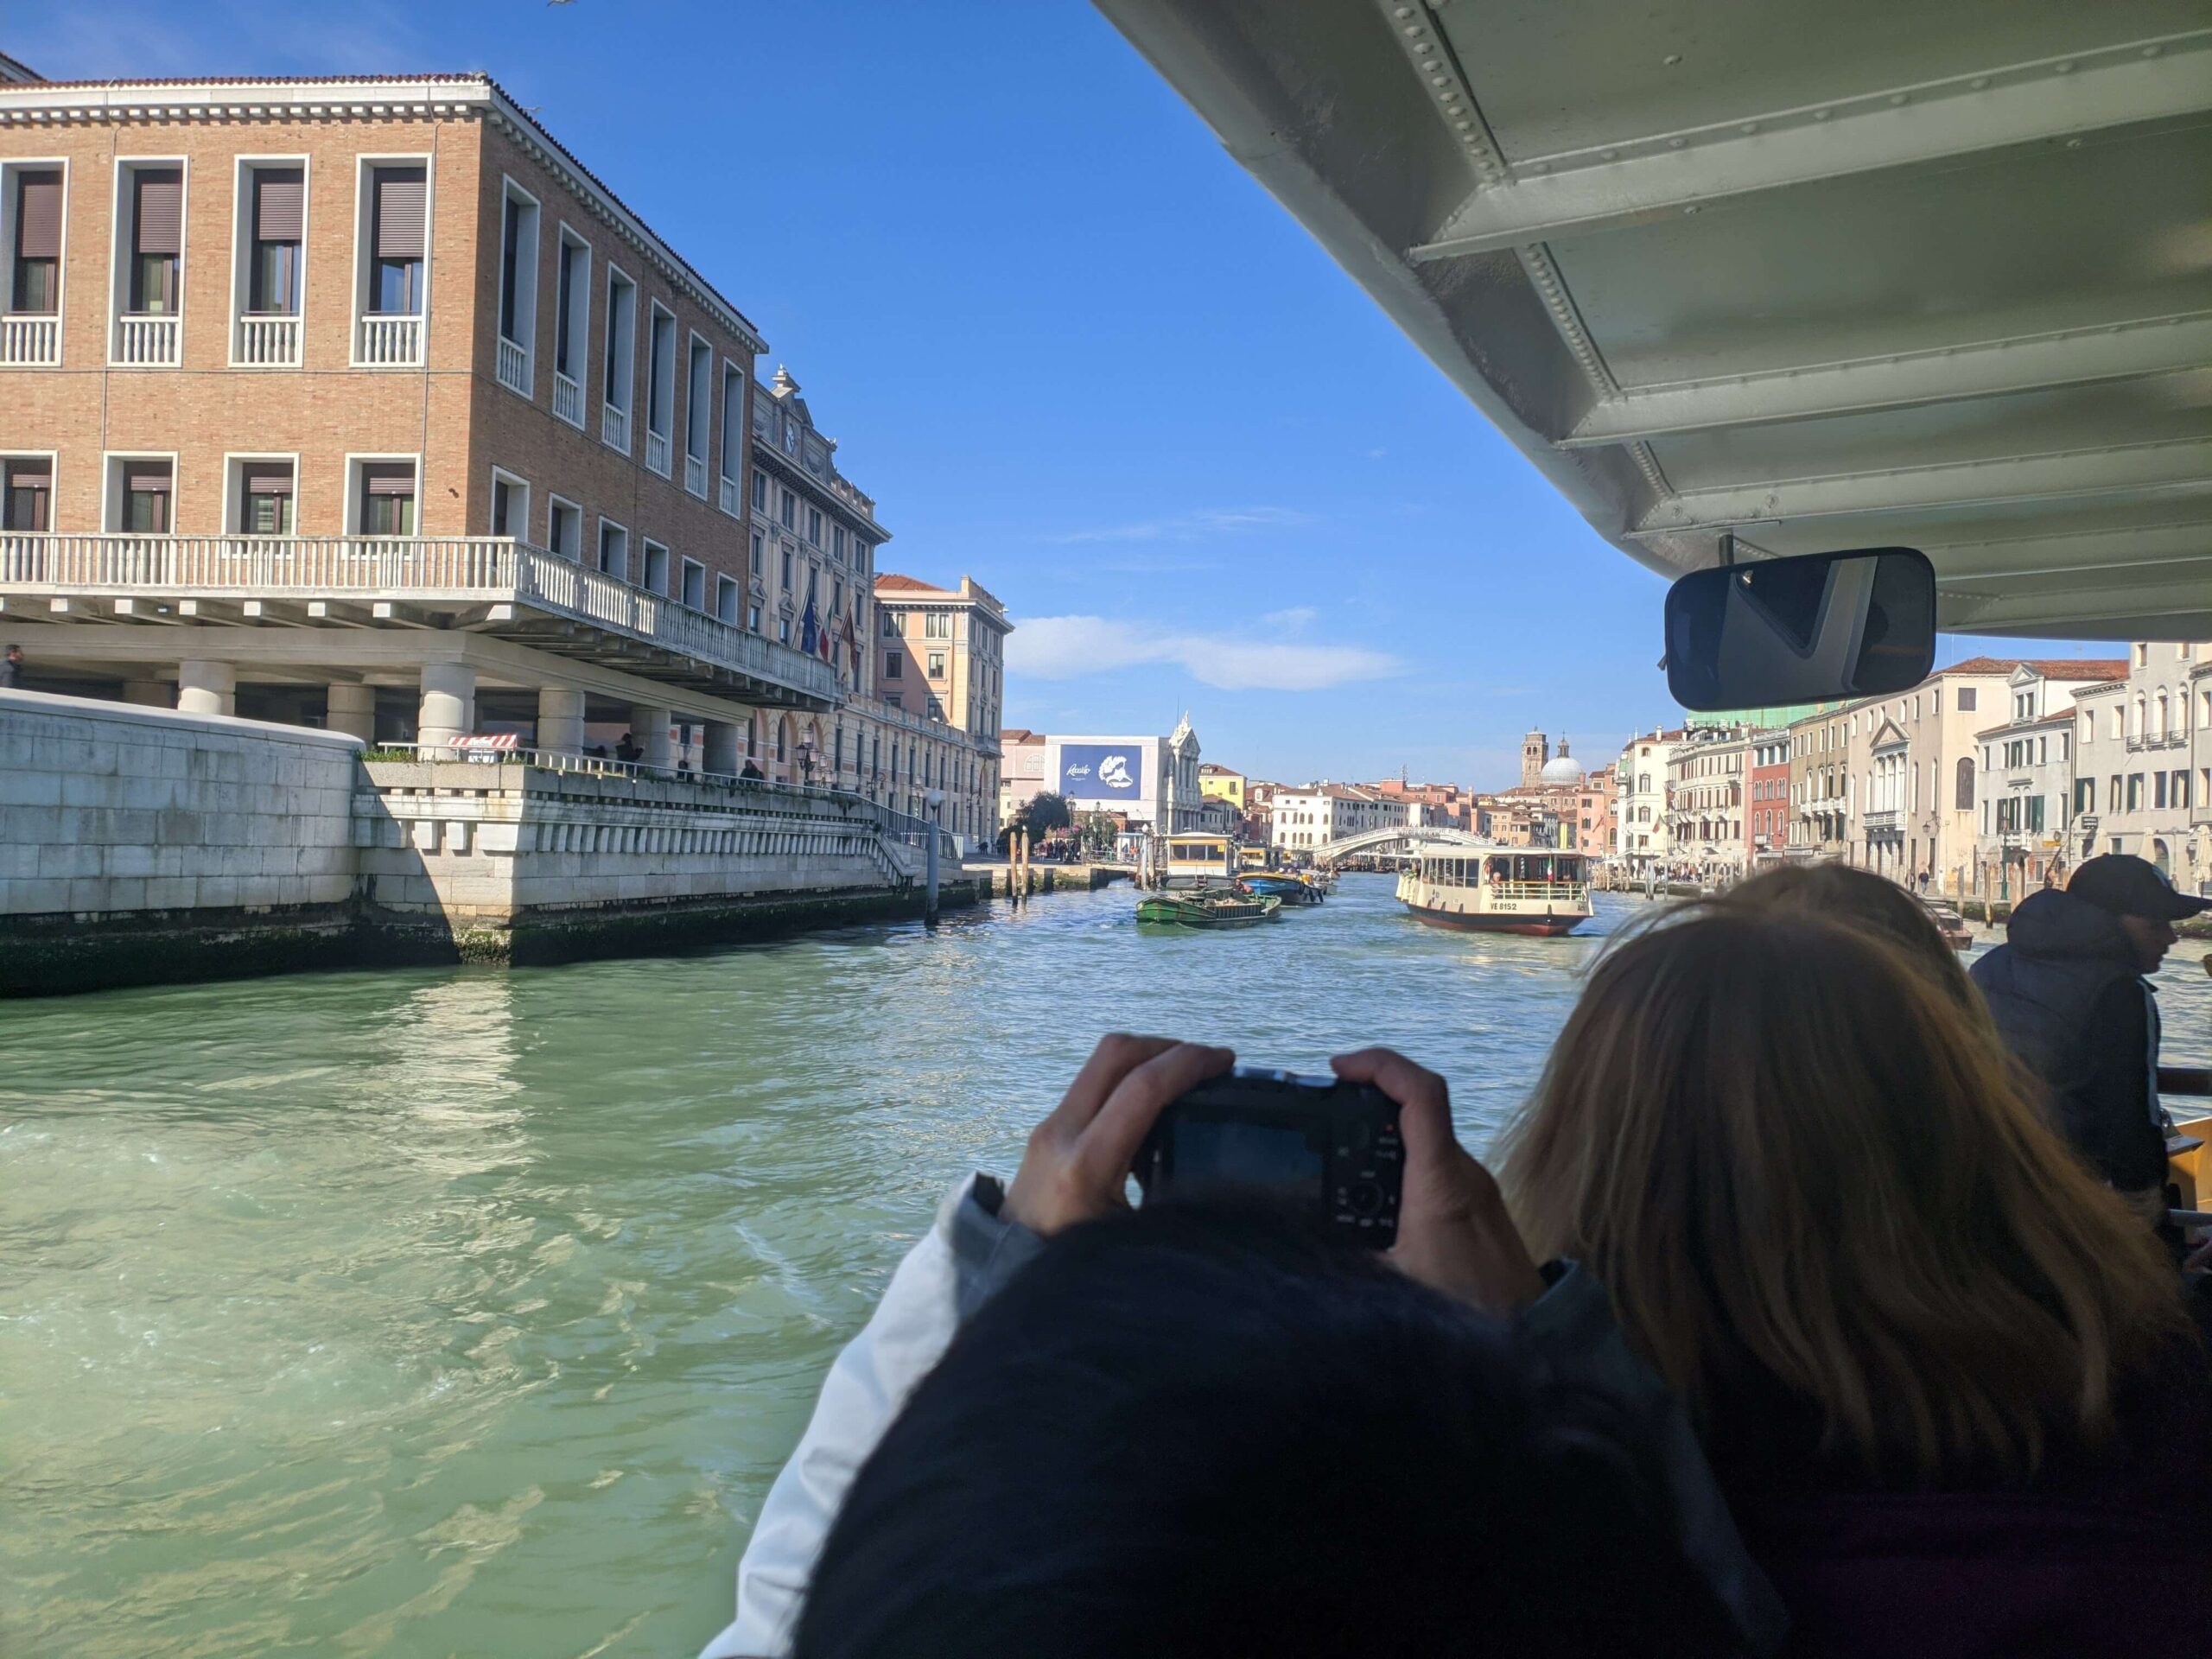 Vista de um passeio de vaporetto em Veneza, com passageiros à frente fotografando a vista do Grande Canal e sua arquitetura fascinante e barcos passando.